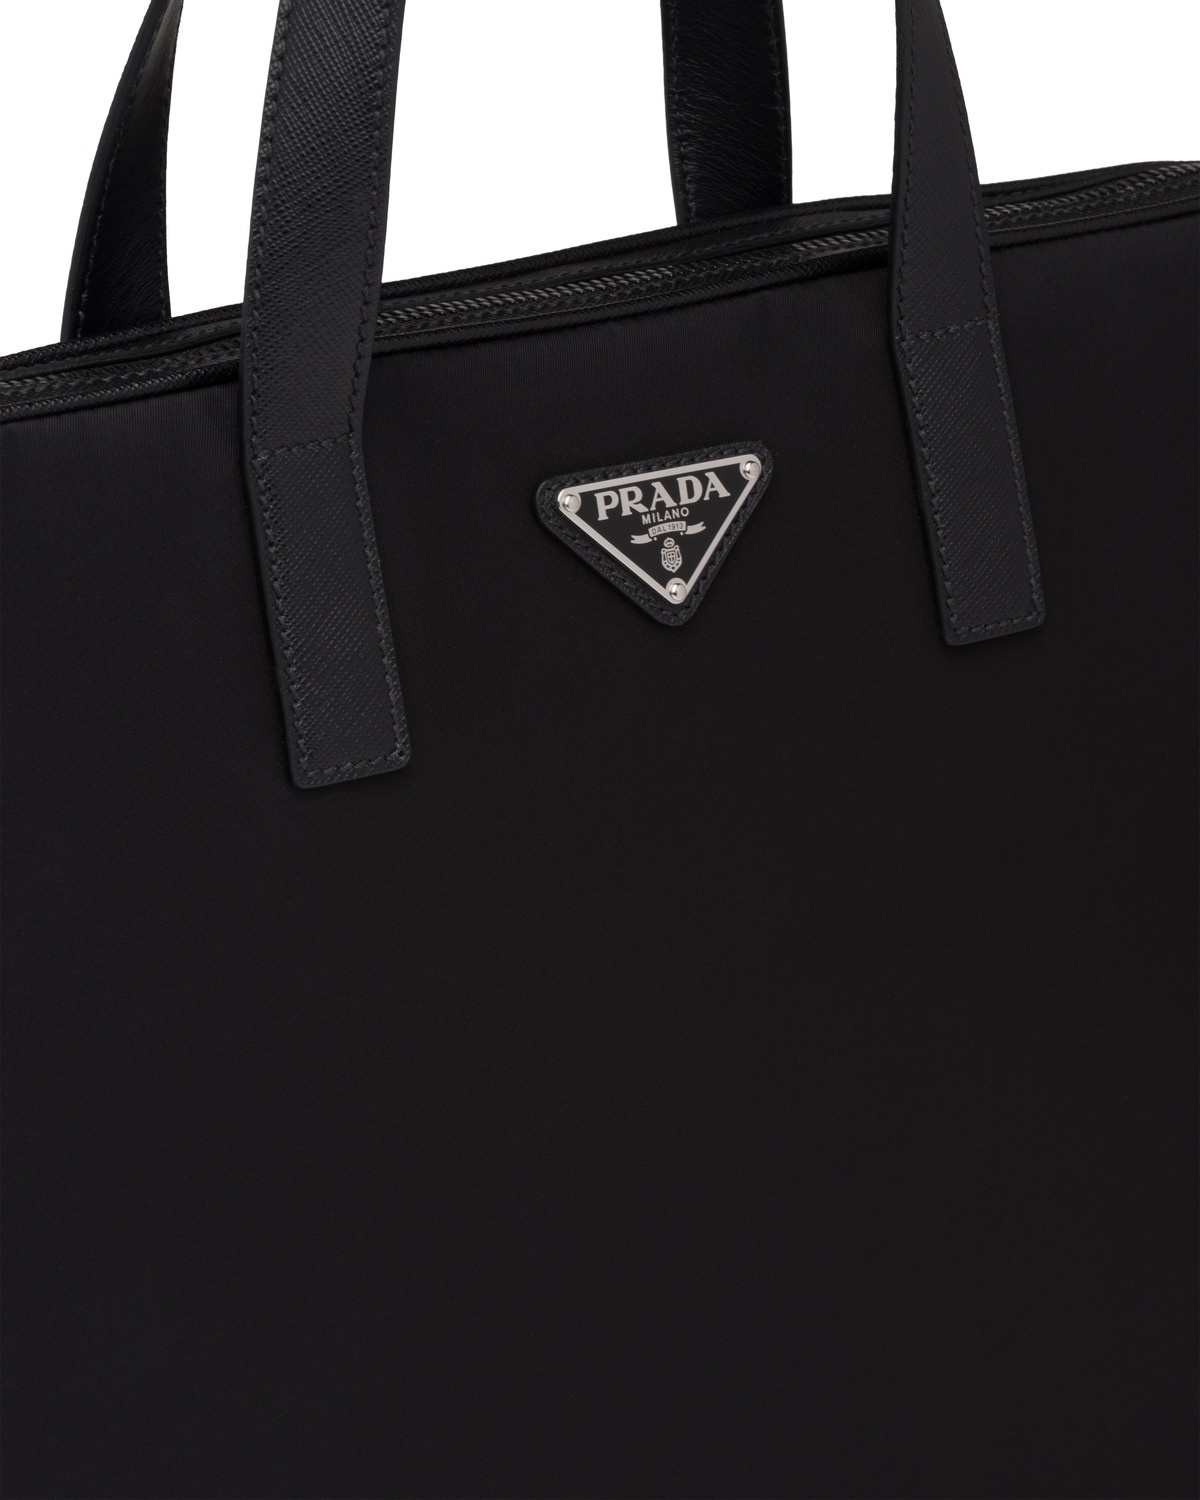 Re-Nylon and Saffiano leather briefcase - 6